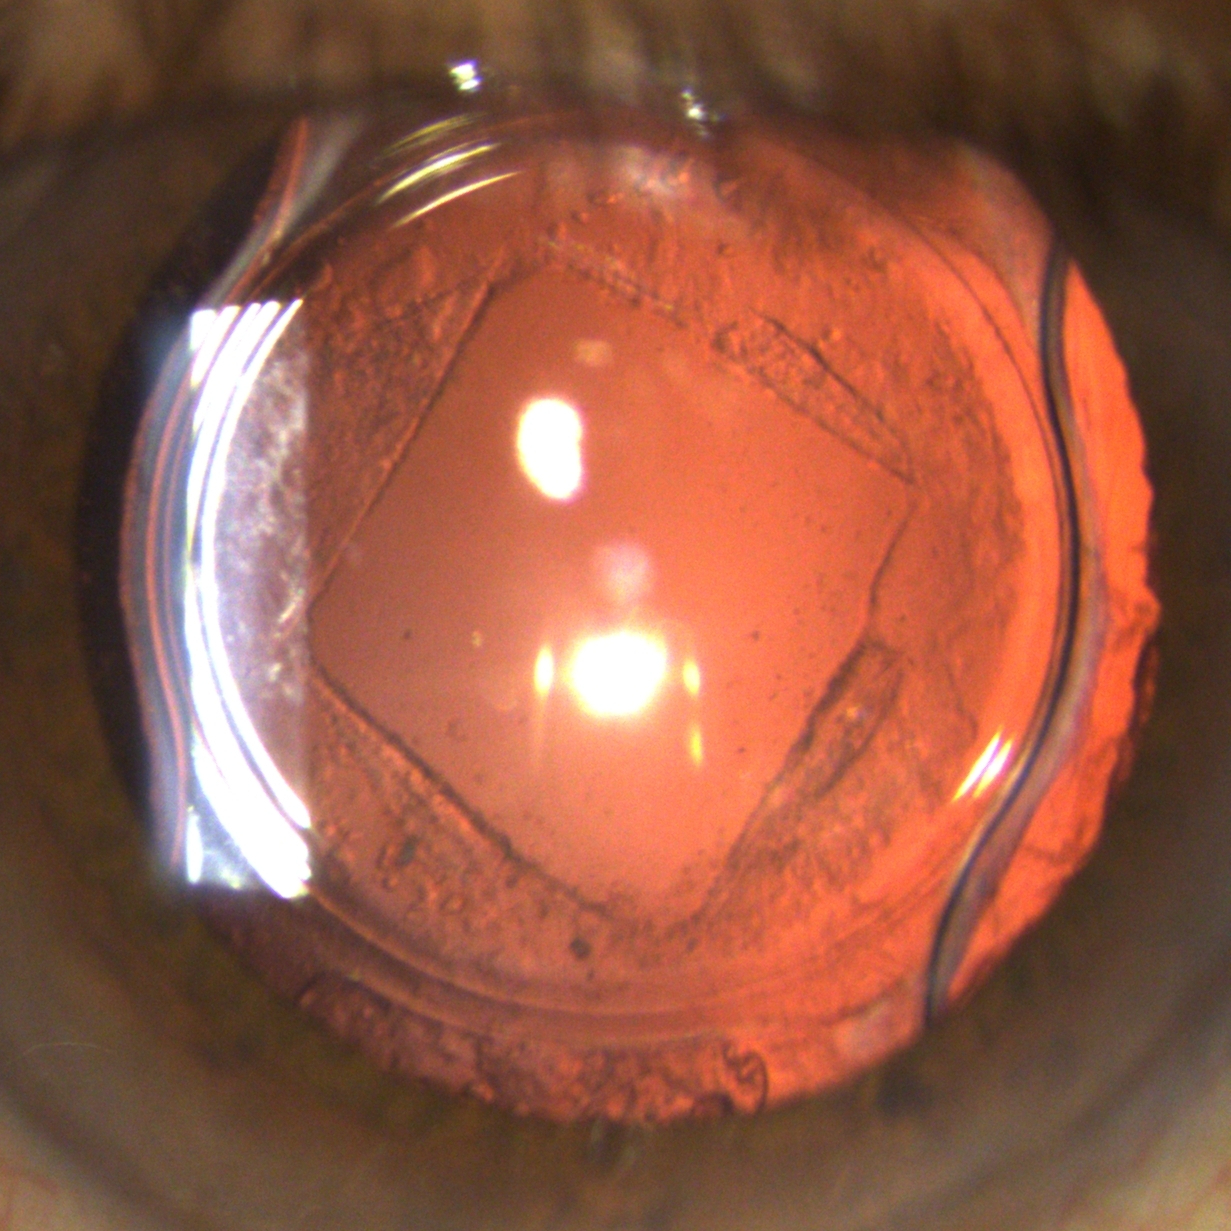 YAG Laser at The Eye Clinic